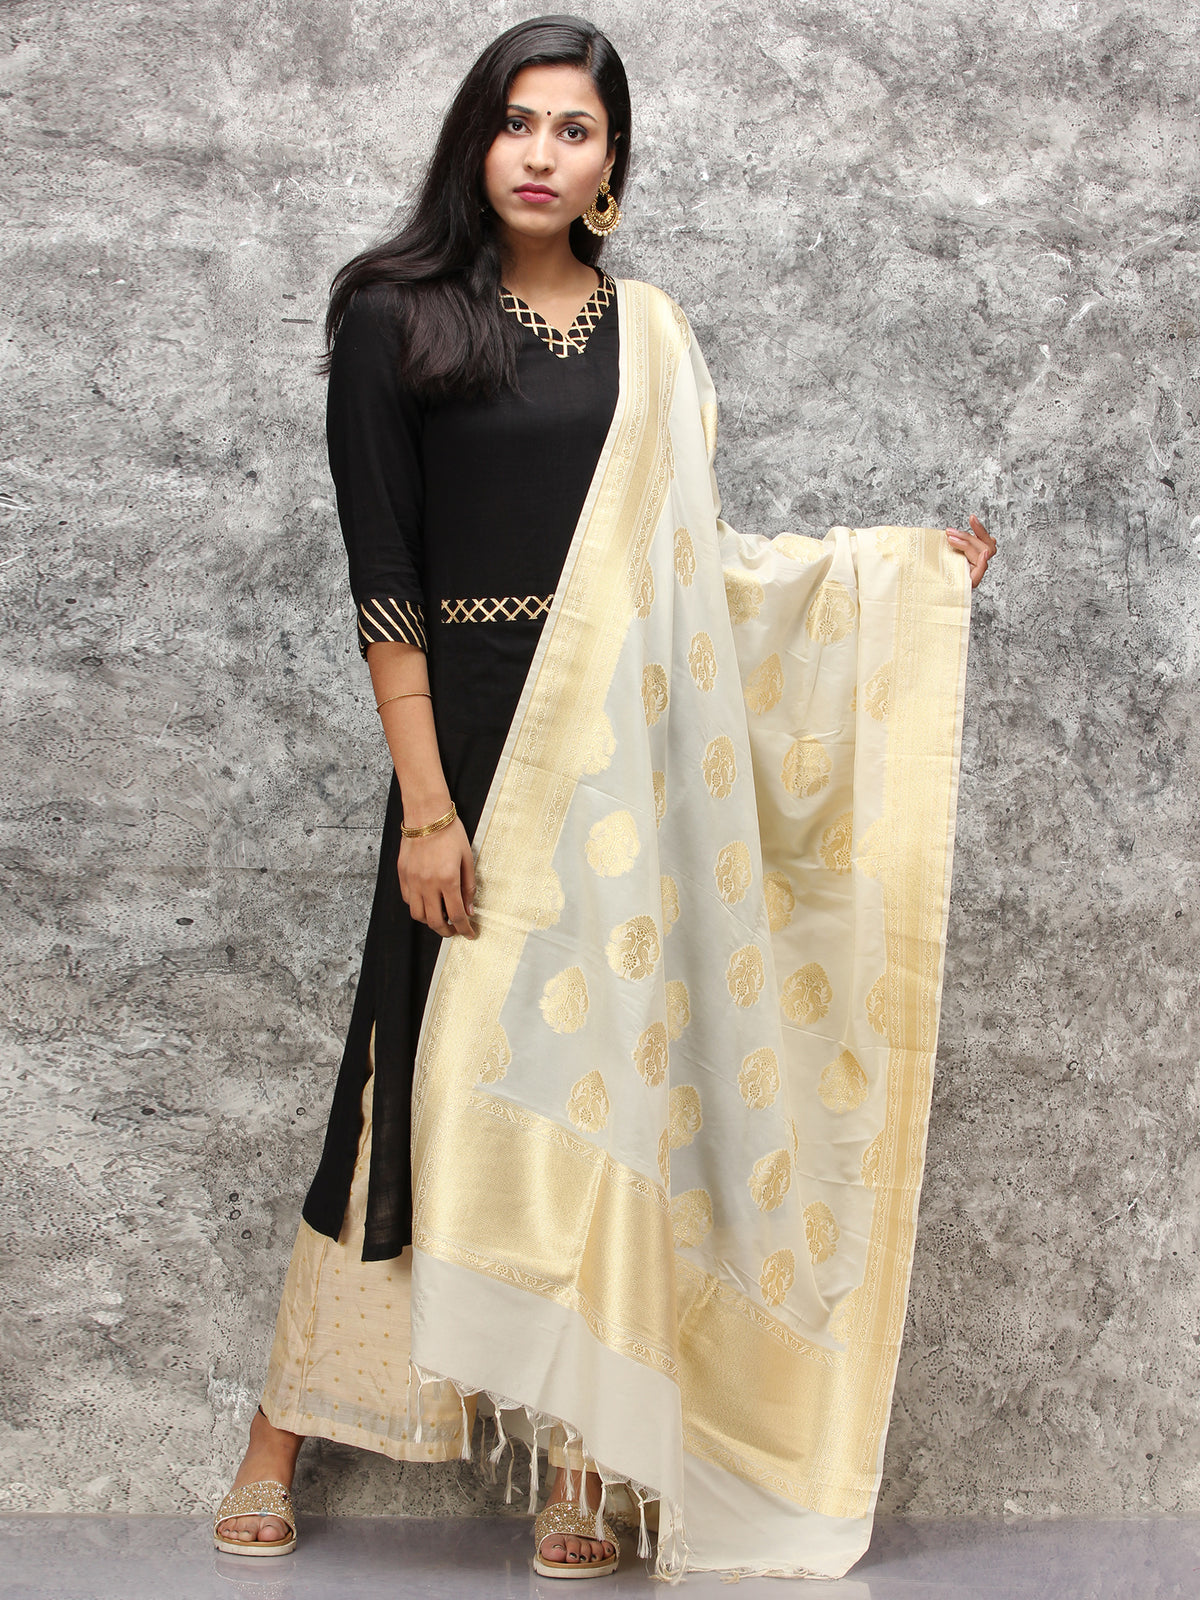 Banarasi Kanni Silk Dupatta With Zari Work - Beige & Gold - D04170887